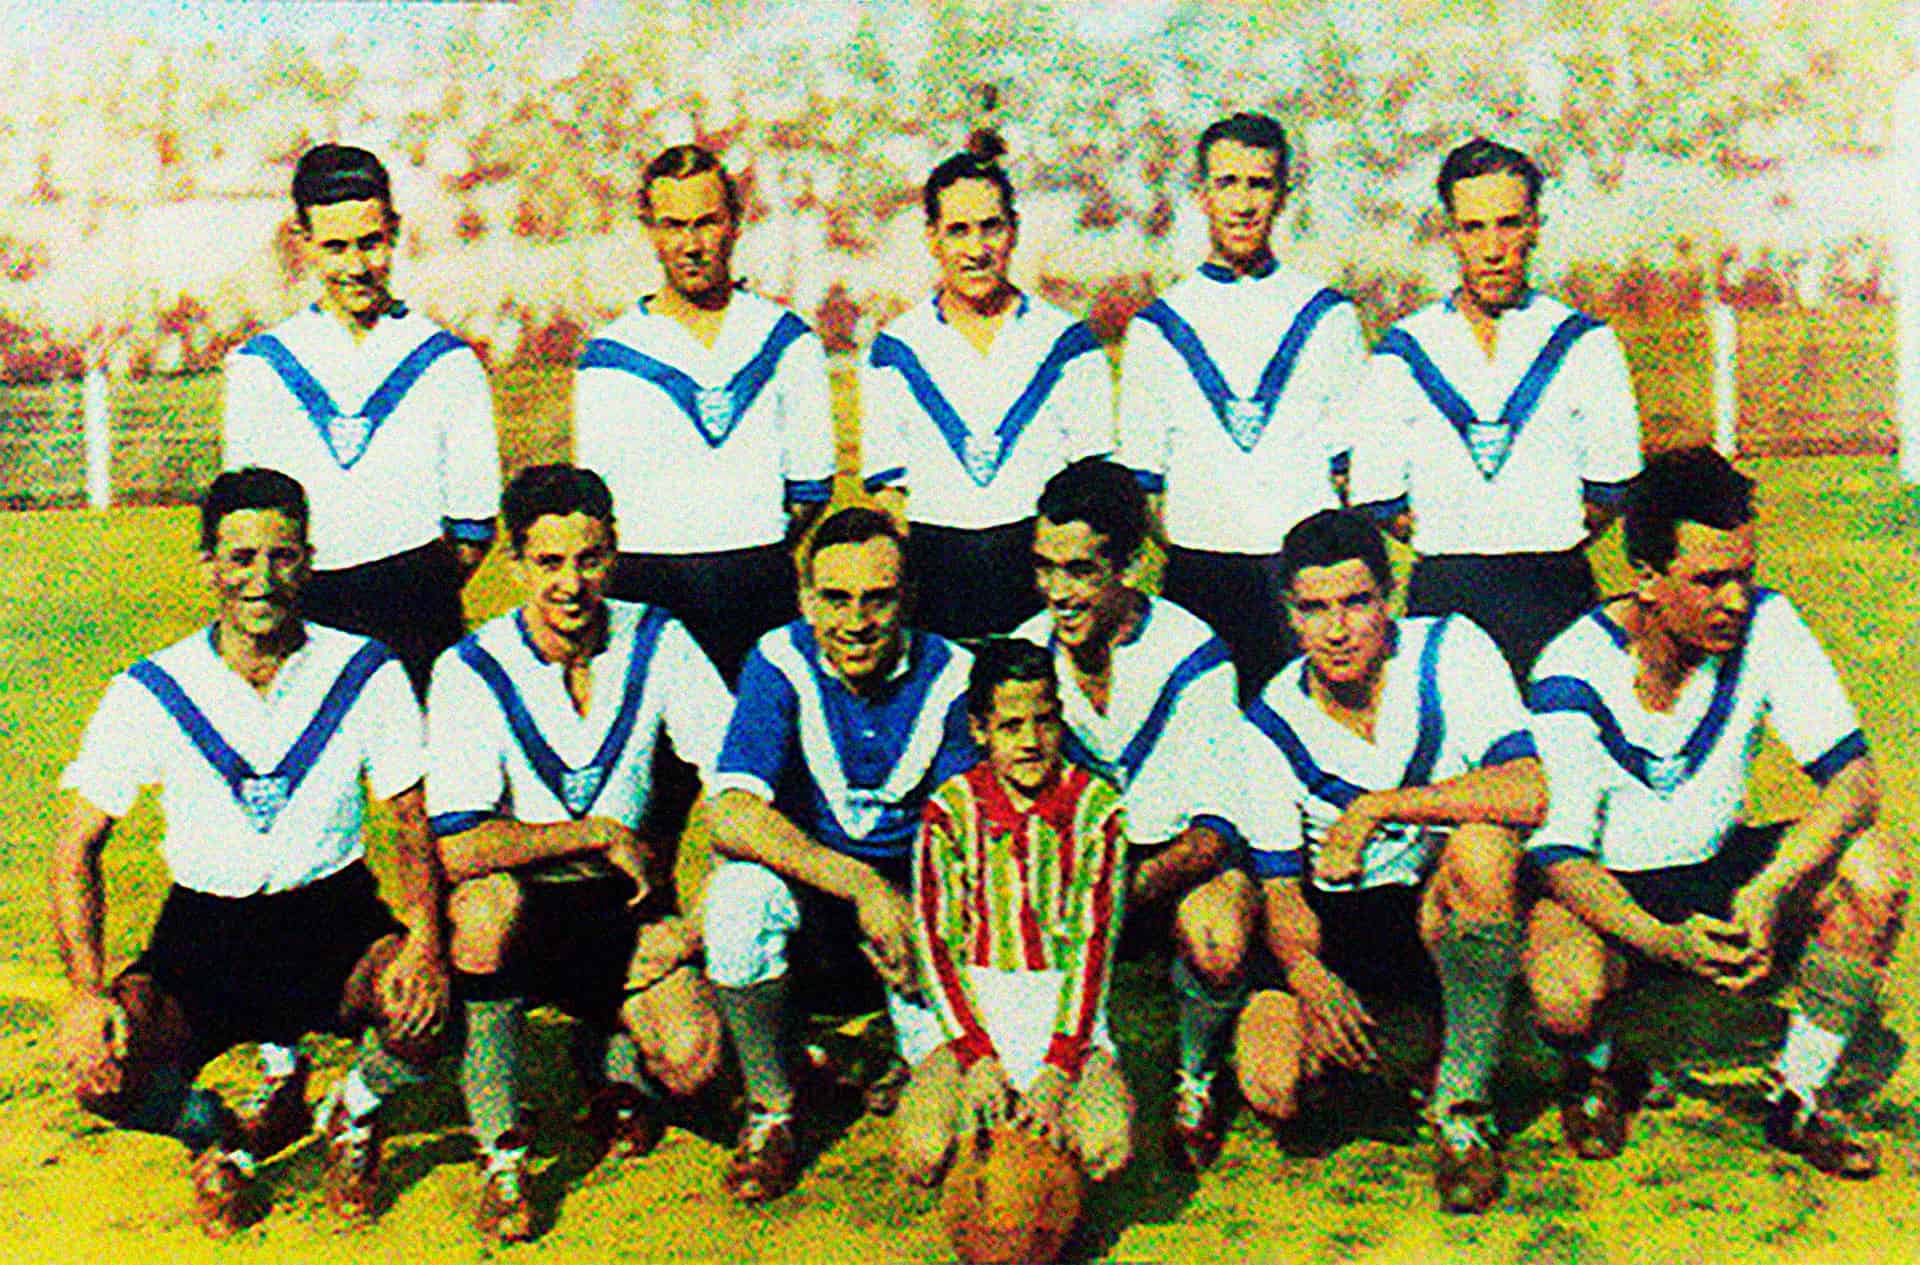 Formación de Vélez Sarsfield en el campeonato de 1933, durante el que se produjo el famoso cambio de camiseta./ Vélez Sarsfield